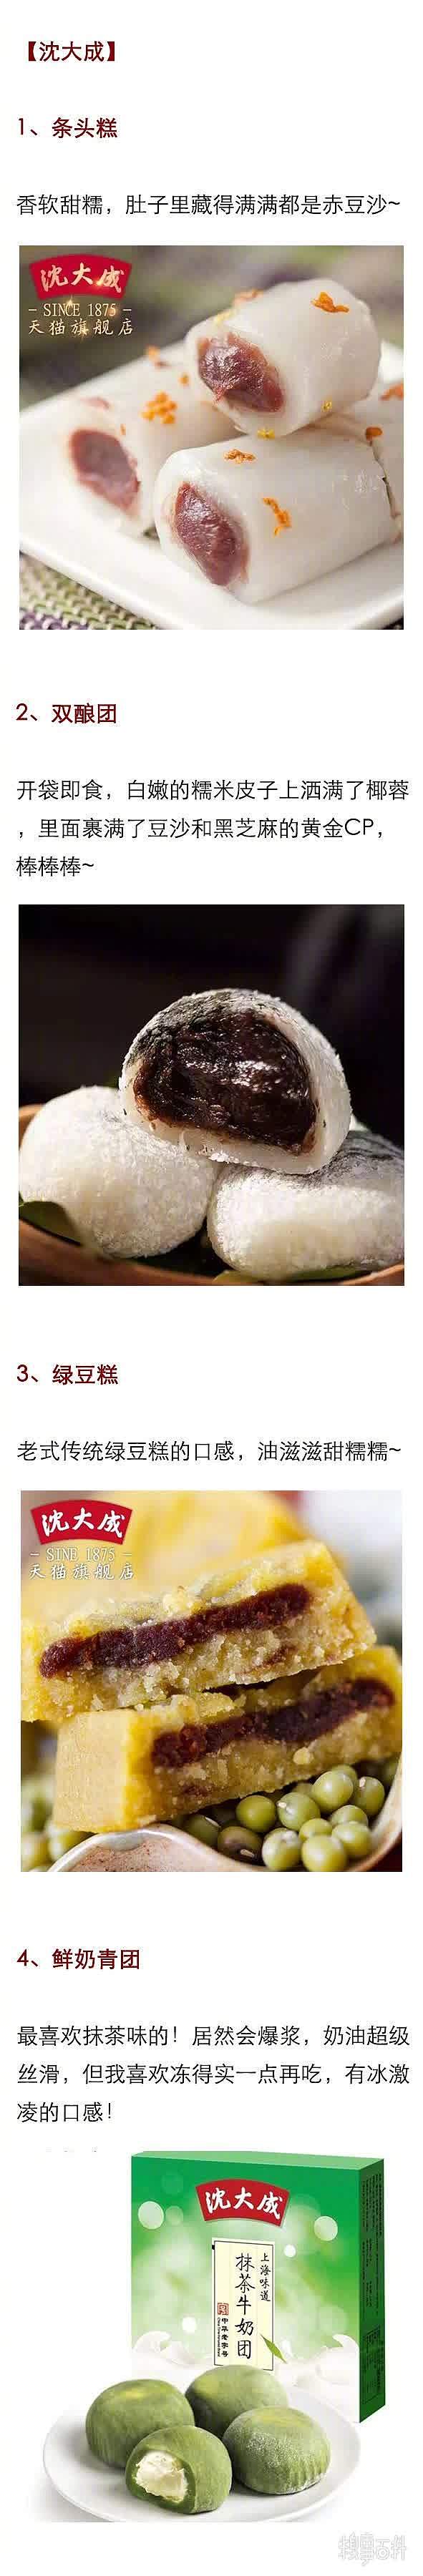 你吃过哪些好吃的中式